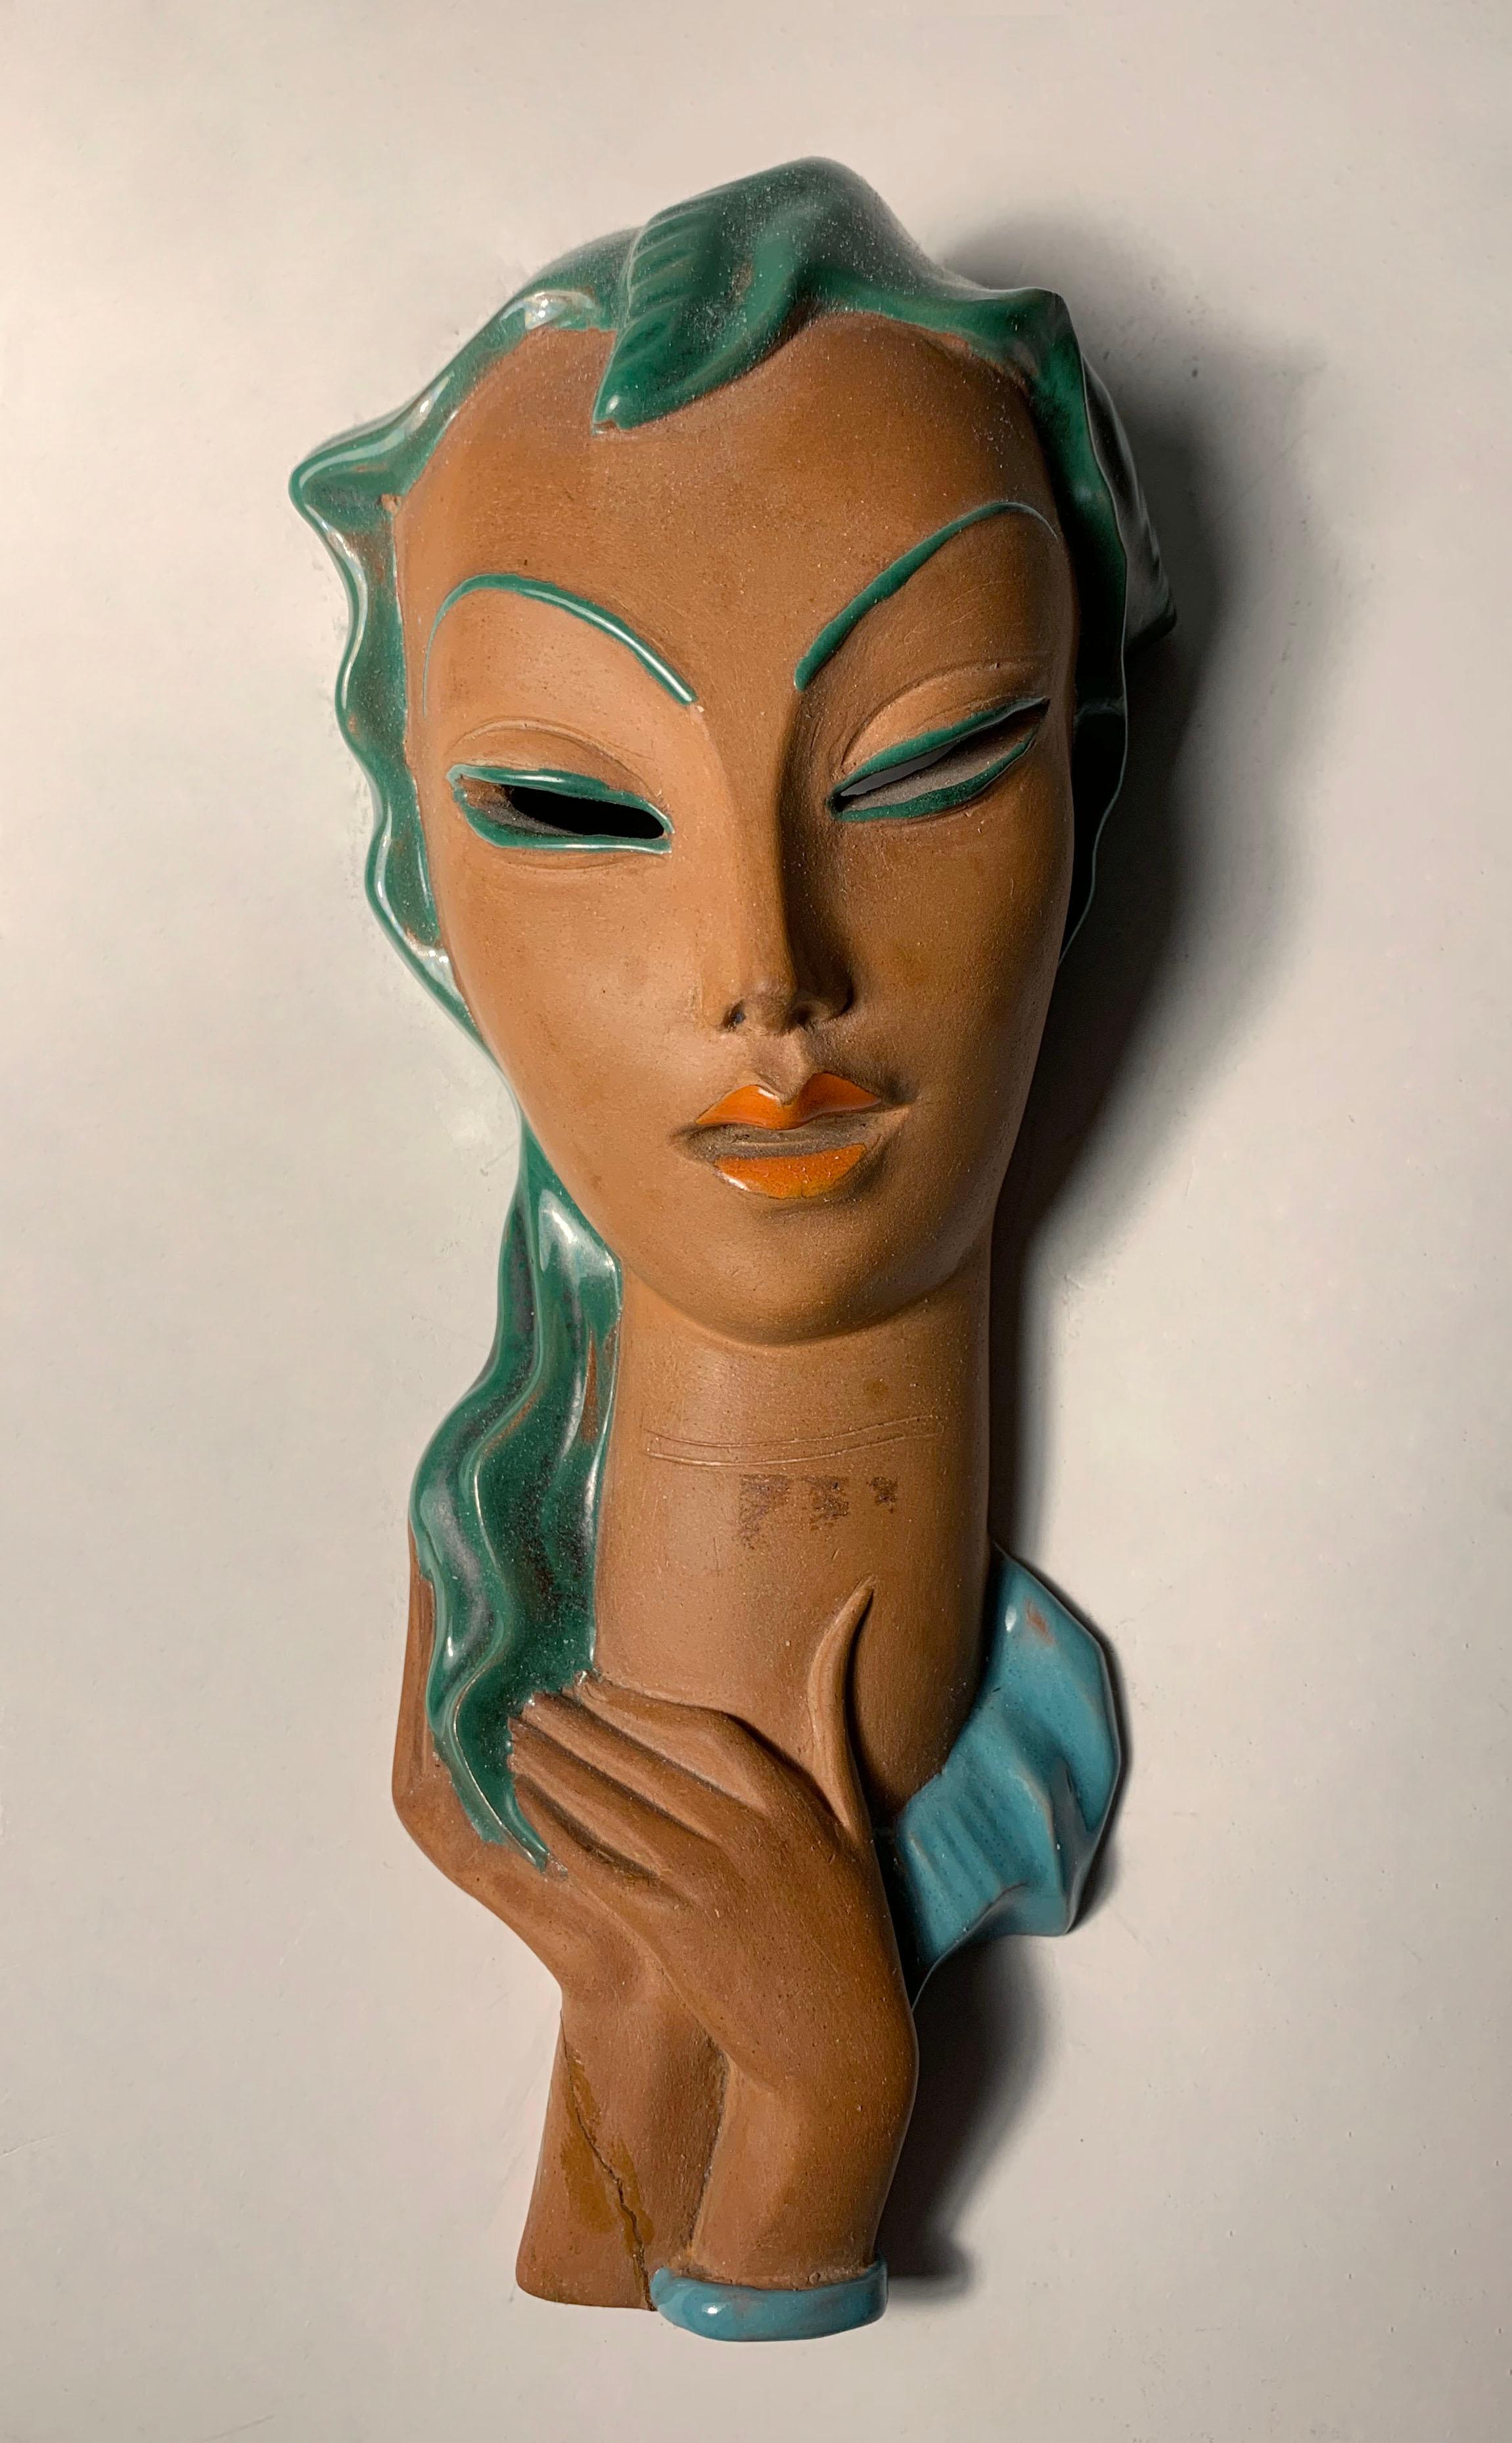 Buste de femme en céramique italienne de style Wall&Deco. Similaire aux travaux de Goldsheider. Ce masque porte la mention Italie au dos, ainsi que ce qui semble être une marque de fabricant et un numéro de modèle.

A un moment donné, quelqu'un a